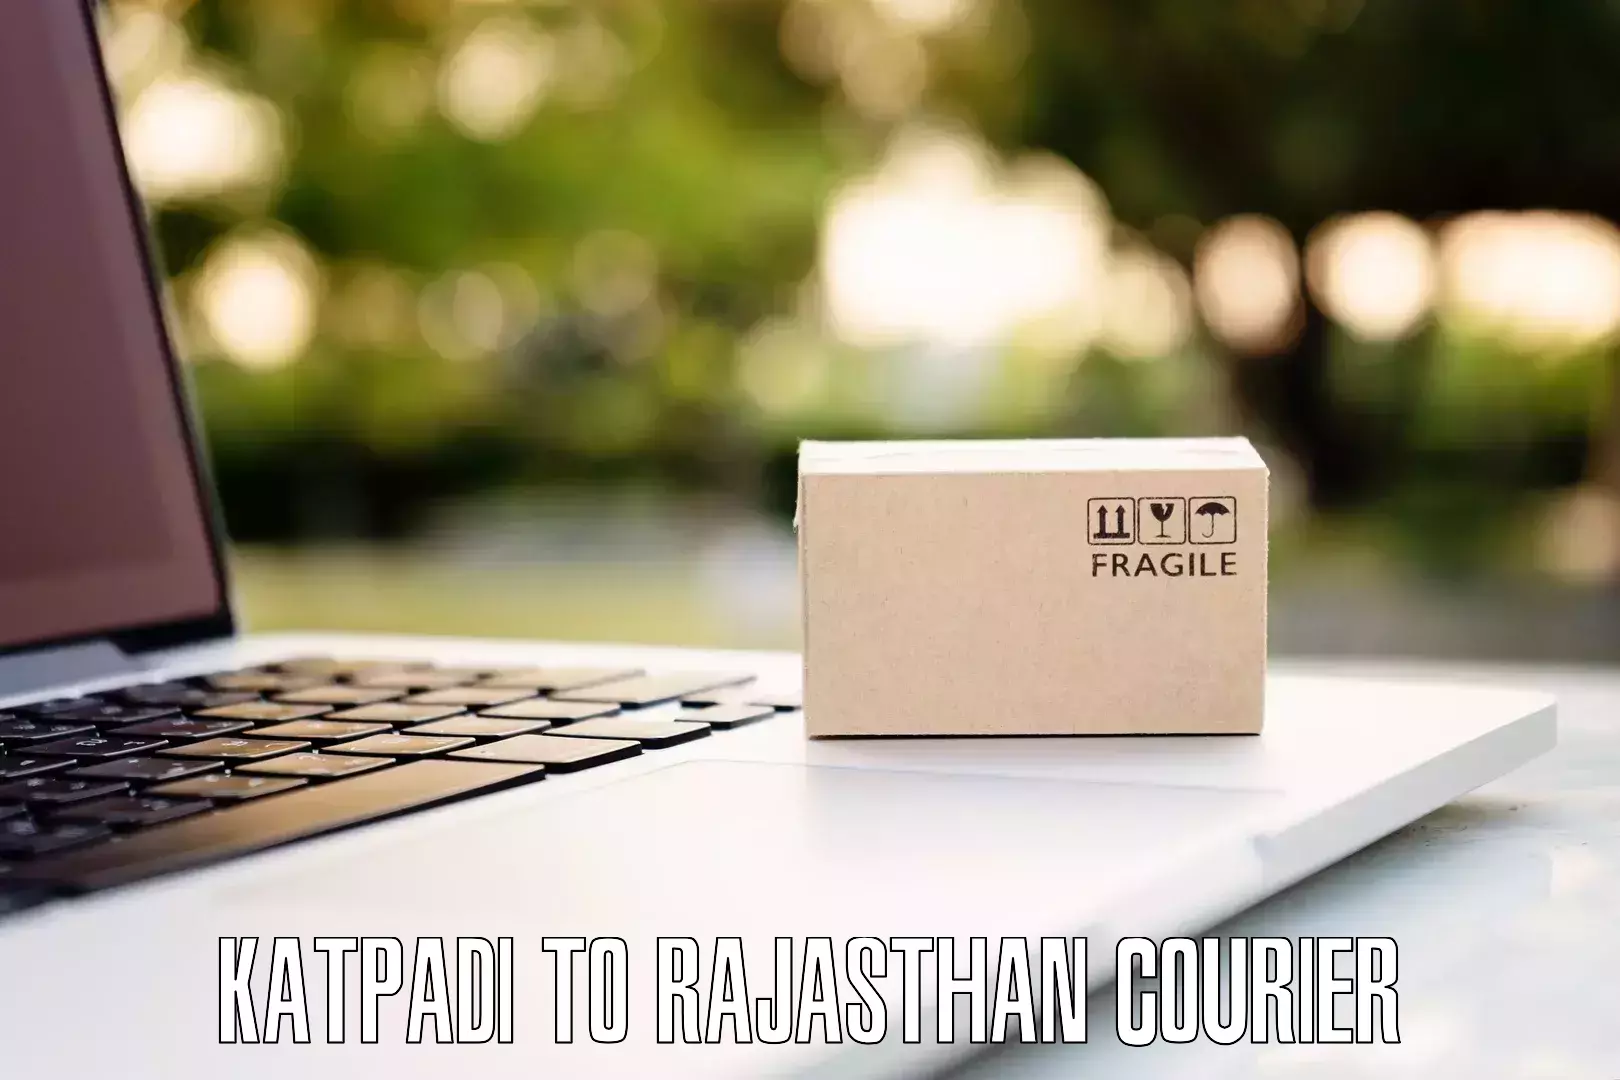 Quick luggage shipment Katpadi to Rajasthan